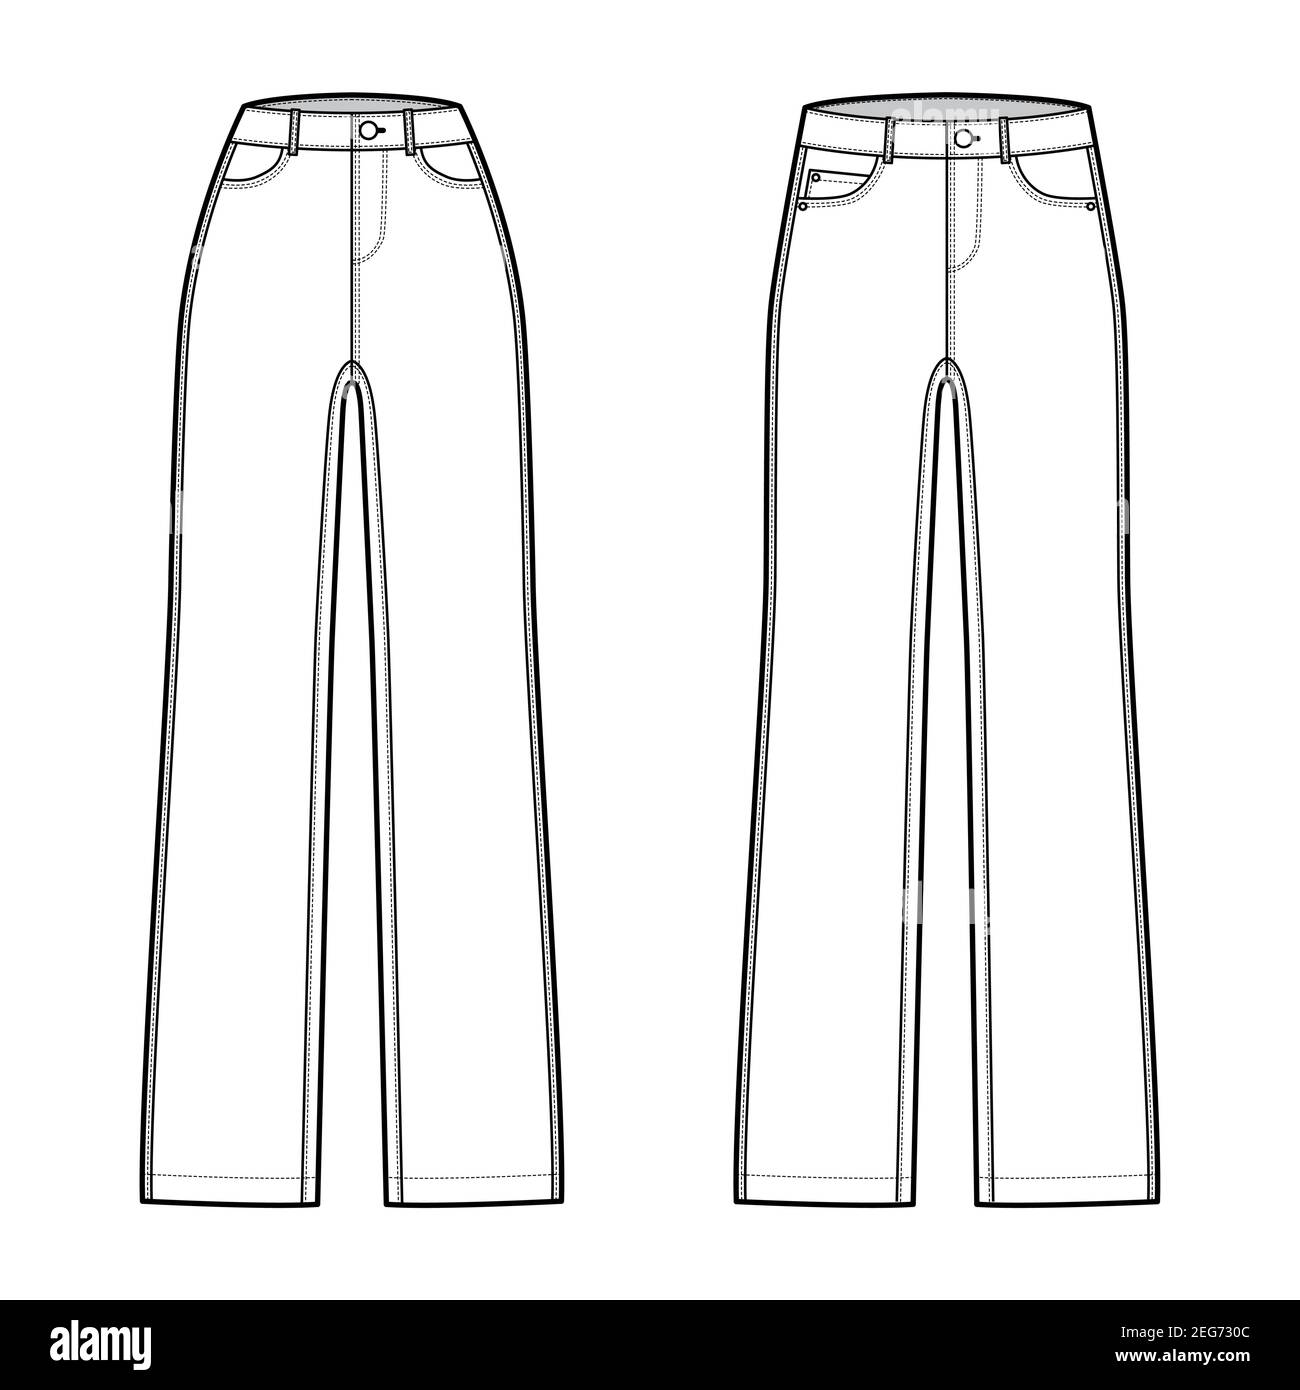 Juego jeans rectos pantalones vaqueros ilustración técnica de moda con longitud completa, cintura baja talle alto, 5 bolsillos, remaches. Plantilla plana frontal, estilo de color blanco. Mujeres, hombres, unisex CAD